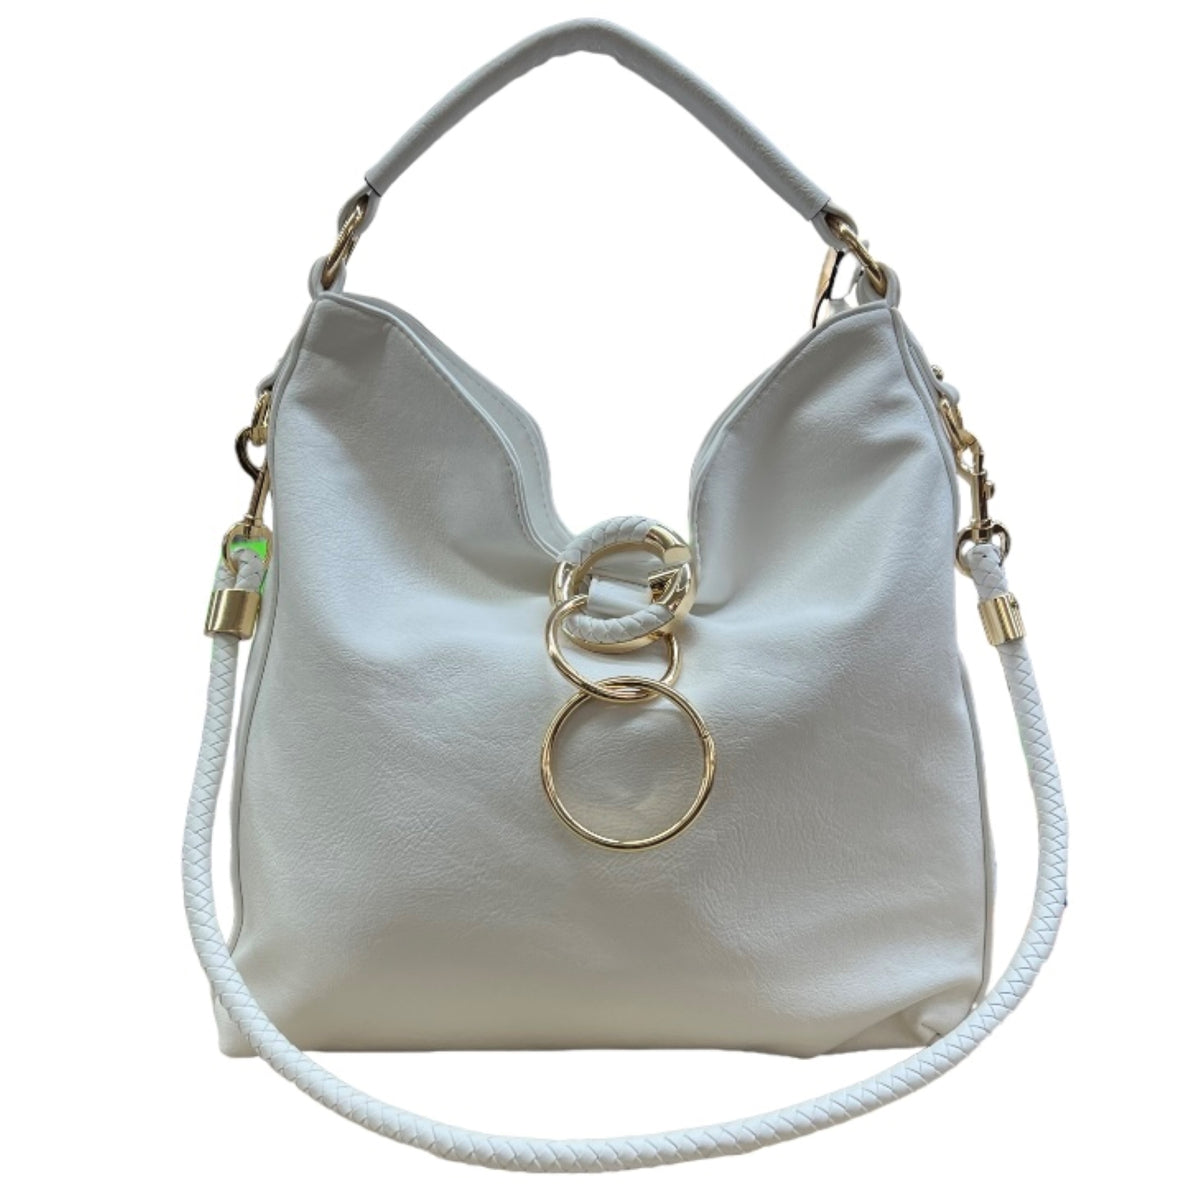 Ce sac blanc est polyvalent grâce à sa capacité à être porté long ou court. Il s'adapte à tous les styles et besoins de portée. Profitez de sa versatilité pour un look personnalisé en toute occasion.